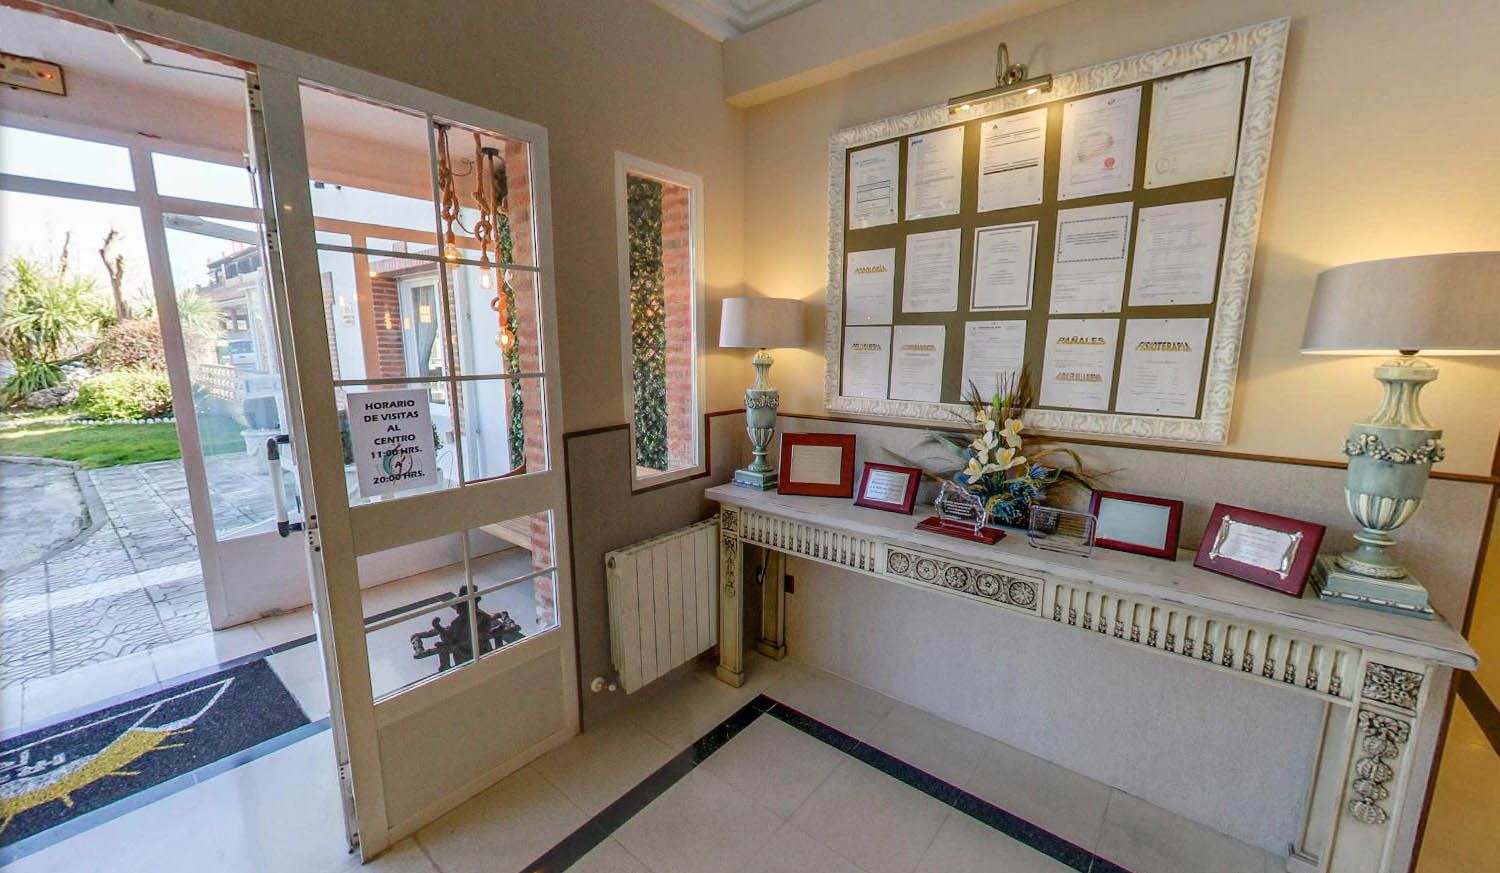 Foto 12 de Residencias geriátricas en Manzanares el Real | Ponderosa Real Hotel Residencia para Mayores